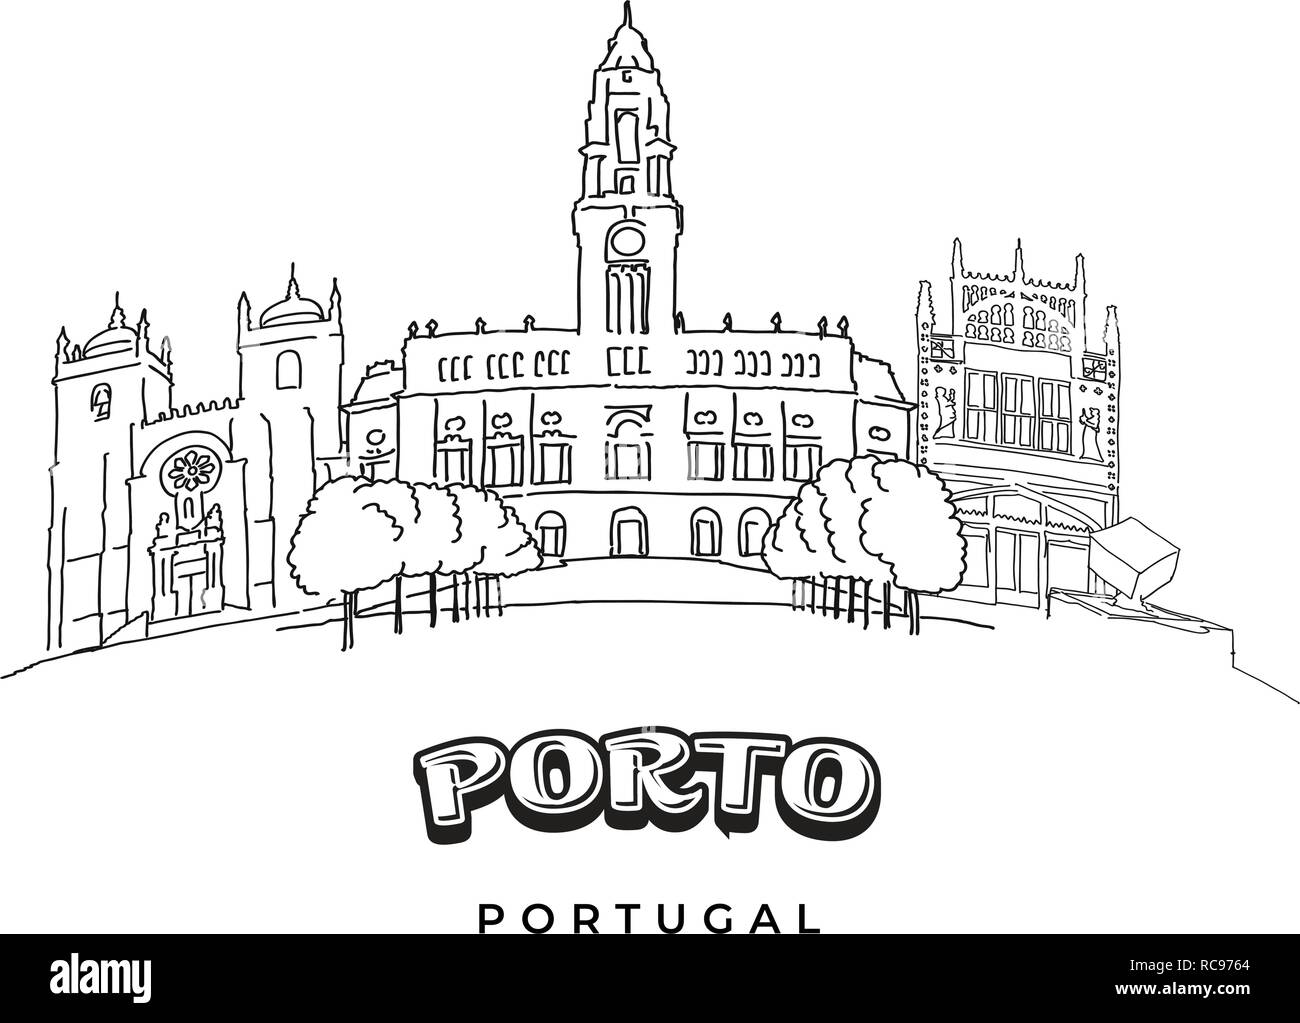 Porto, Portugal berühmte Architektur. Handgezeichneten Vector Illustration. Berühmte Reiseziele Serie. Stock Vektor